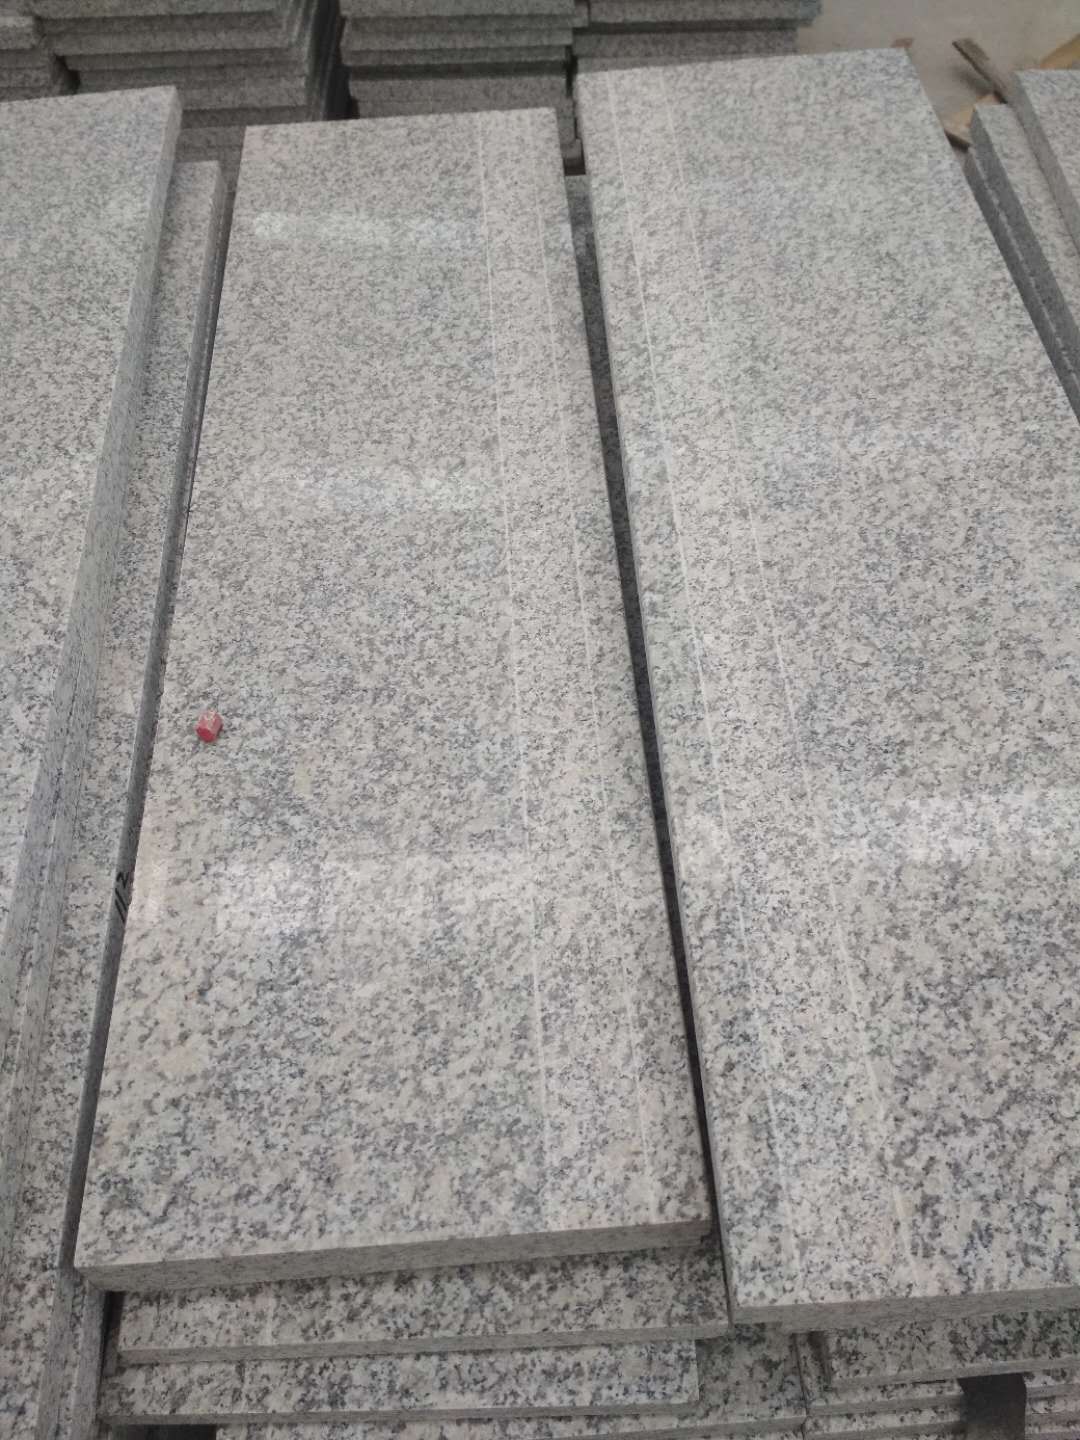 G603 light granite step with anti-slip